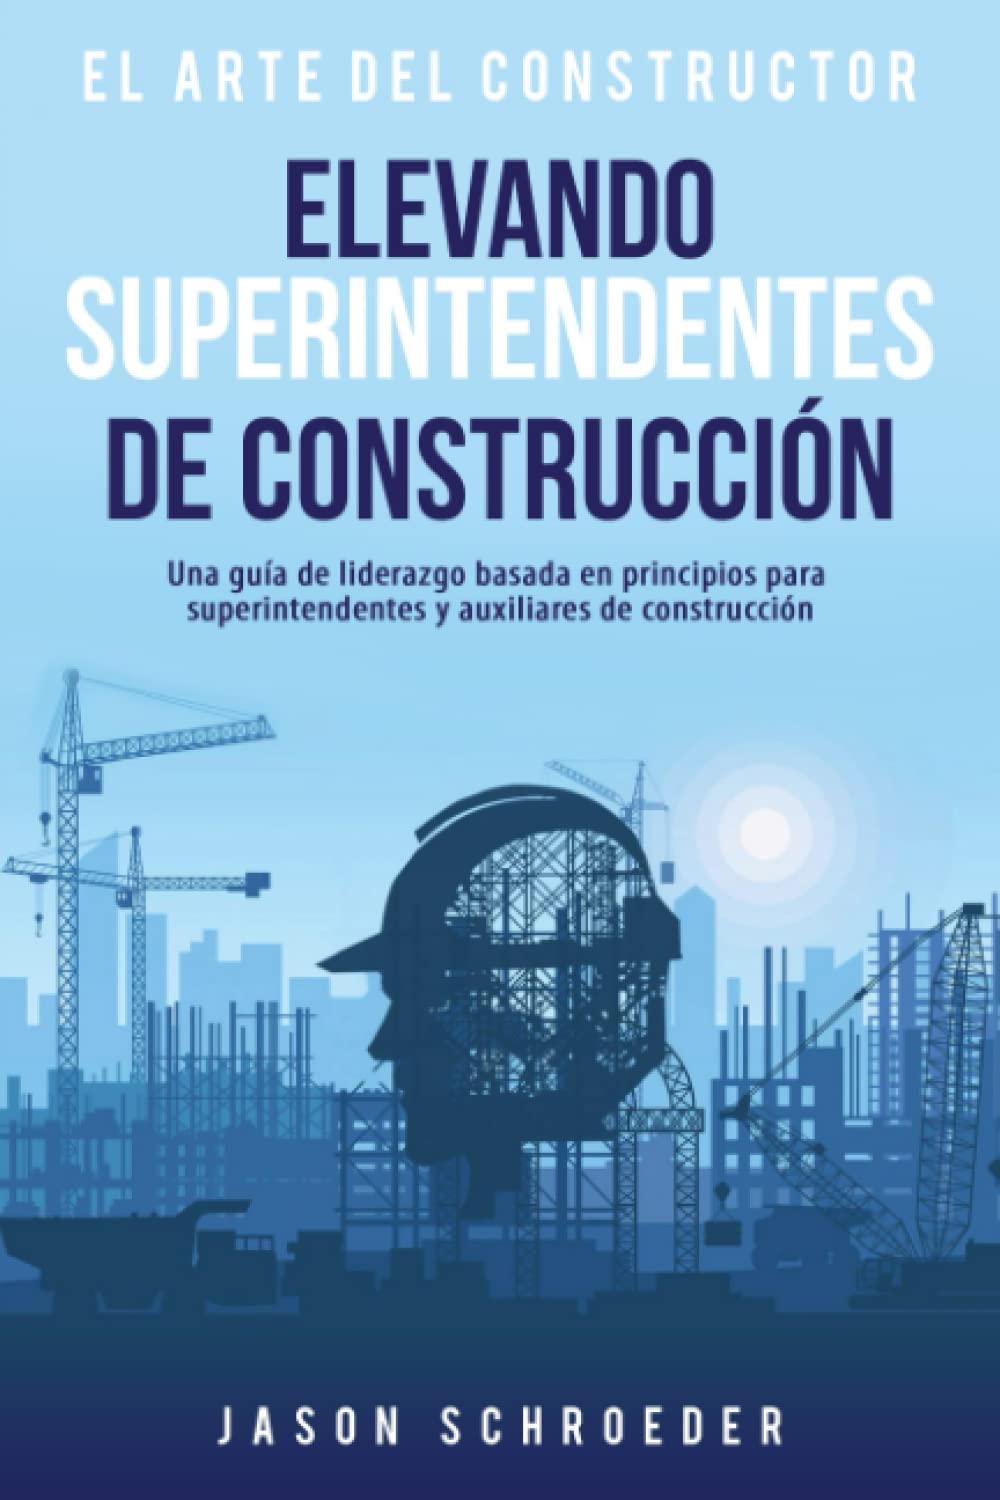 Elevando superintendentes de construcción: Una guía de liderazgo basada en principios para superintendentes auxiliaries y superintendentes en la construcción (The Art of the Builder) (Spanish Edition)